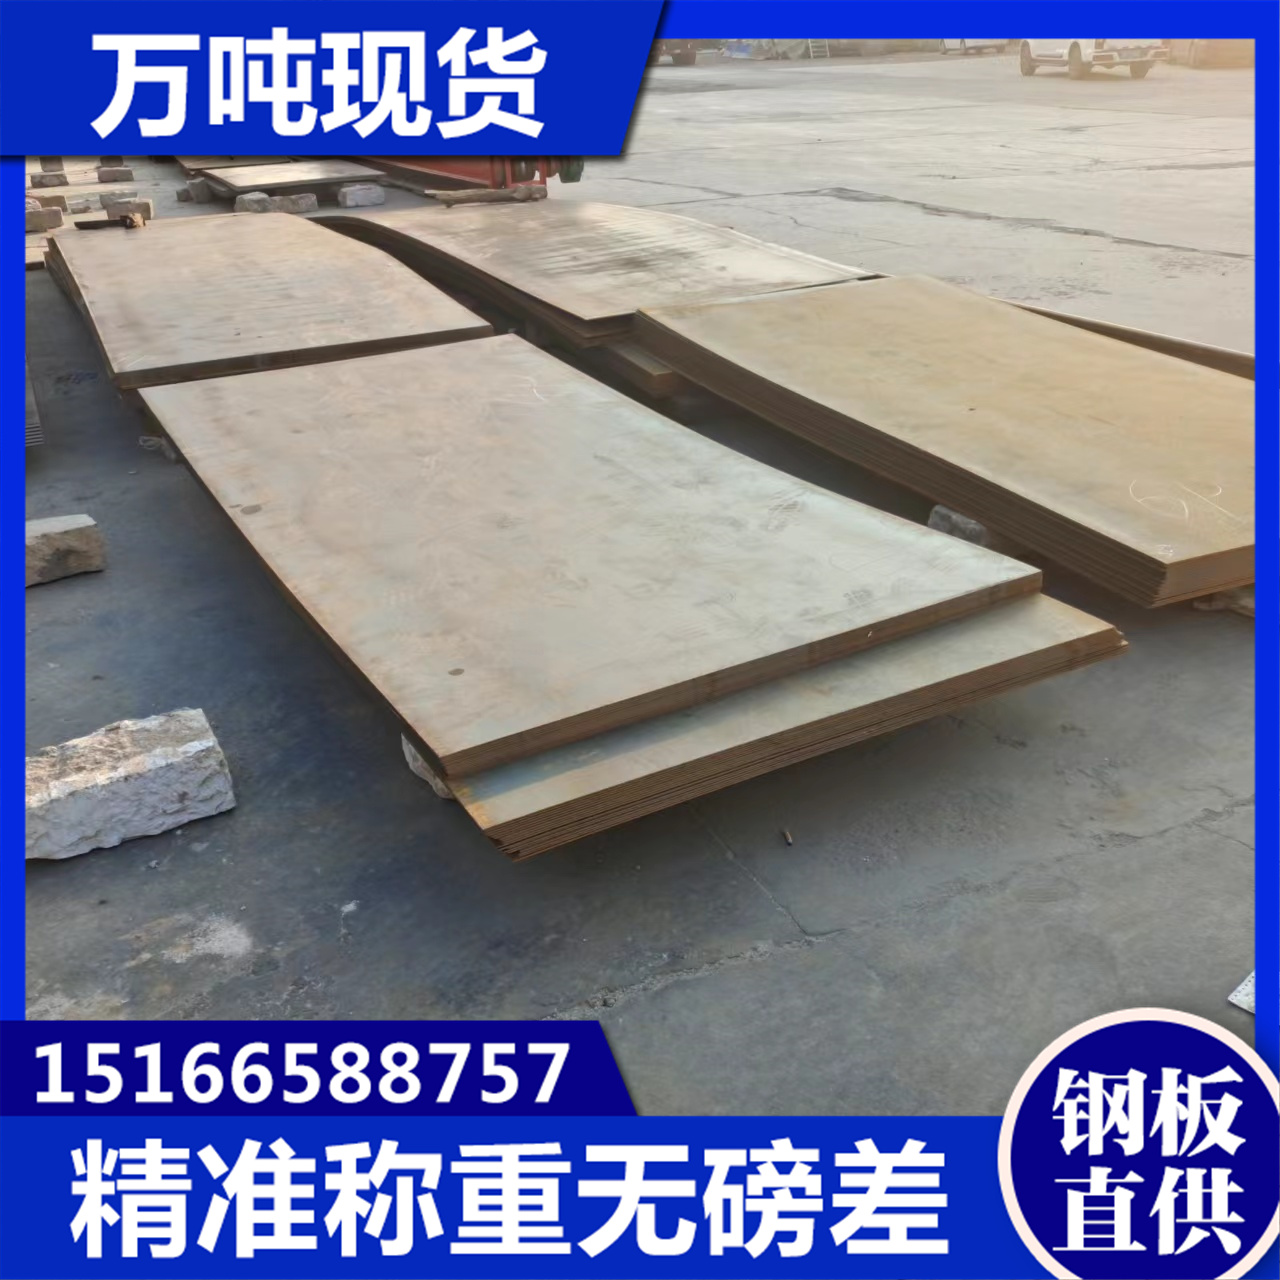 昊鲁钢铁 潮/州q390b钢板 快速发货，不误工期 多种加工车间